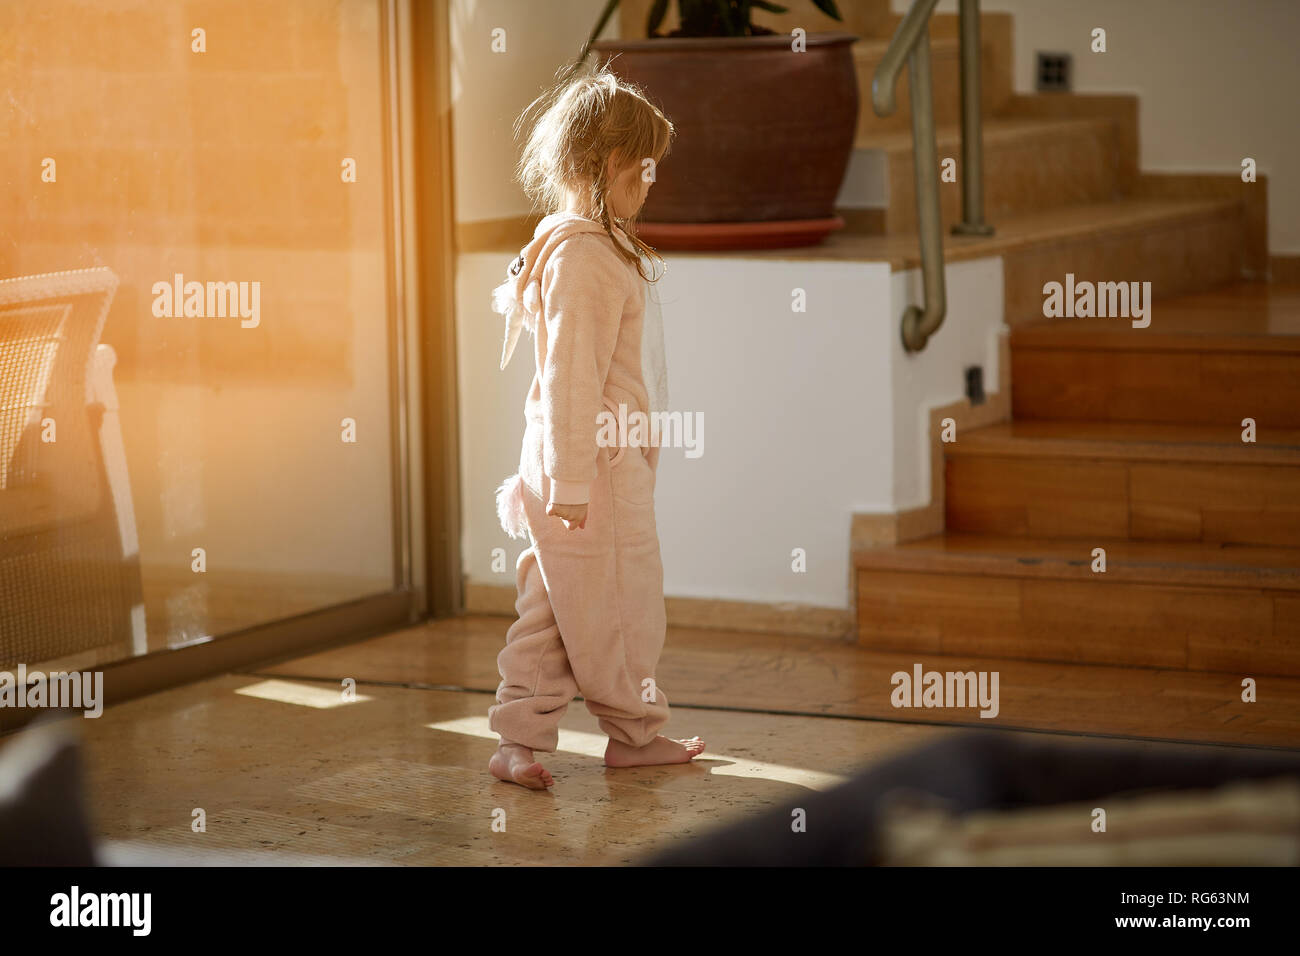 La colère jeune fille se tient sur le sol près de la fenêtre Banque D'Images